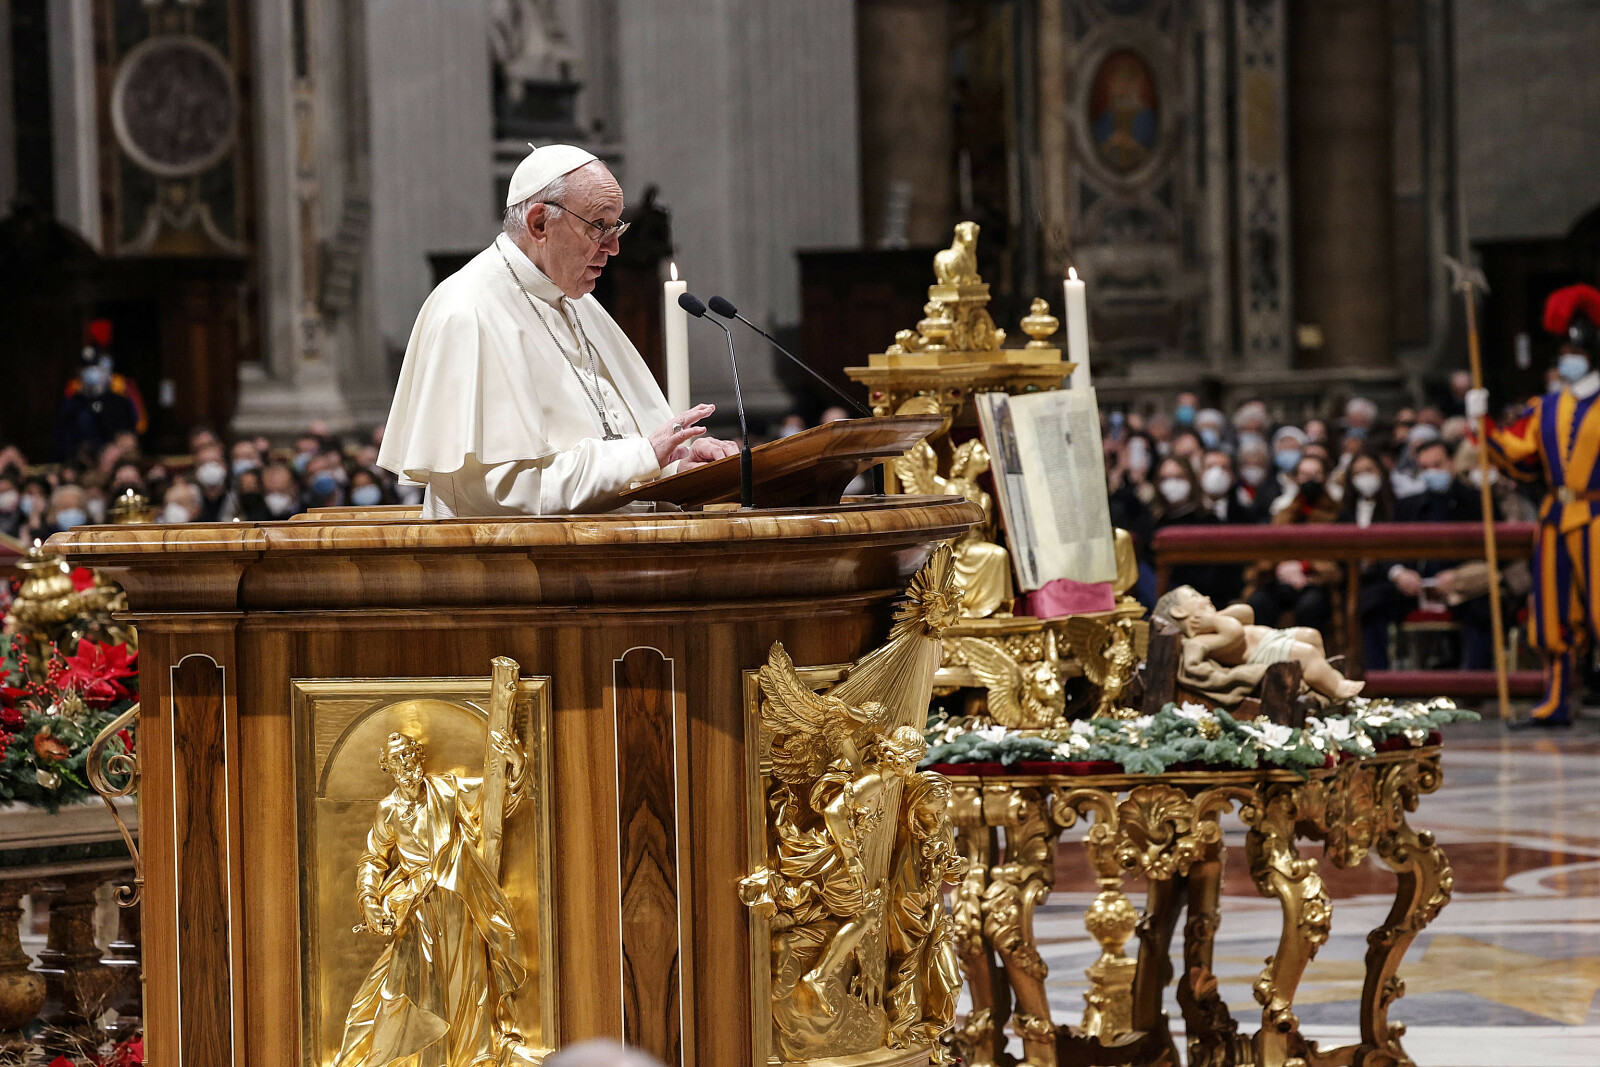 Papież Franciszek celebruje wygłasza homilię podczas nieszporów dziękczynnych na  zakończenie roku w Bazylice św. Piotra w Watykanie, 31 grudnia 2021 r. (fot. GIUSEPPE LAMI/PAP/EPA)